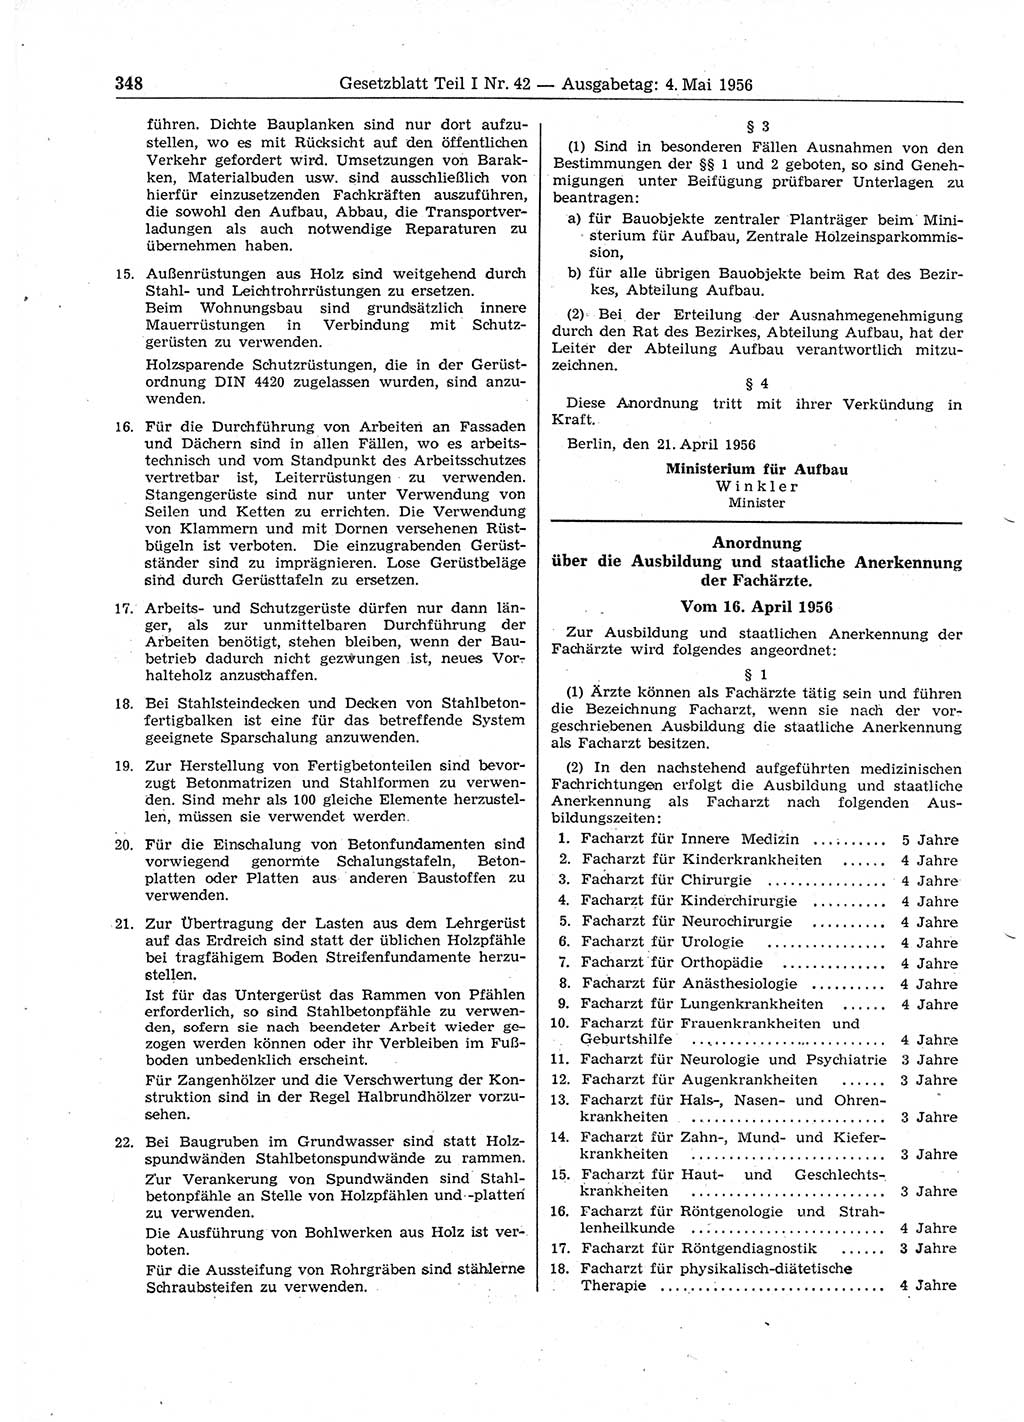 Gesetzblatt (GBl.) der Deutschen Demokratischen Republik (DDR) Teil Ⅰ 1956, Seite 348 (GBl. DDR Ⅰ 1956, S. 348)